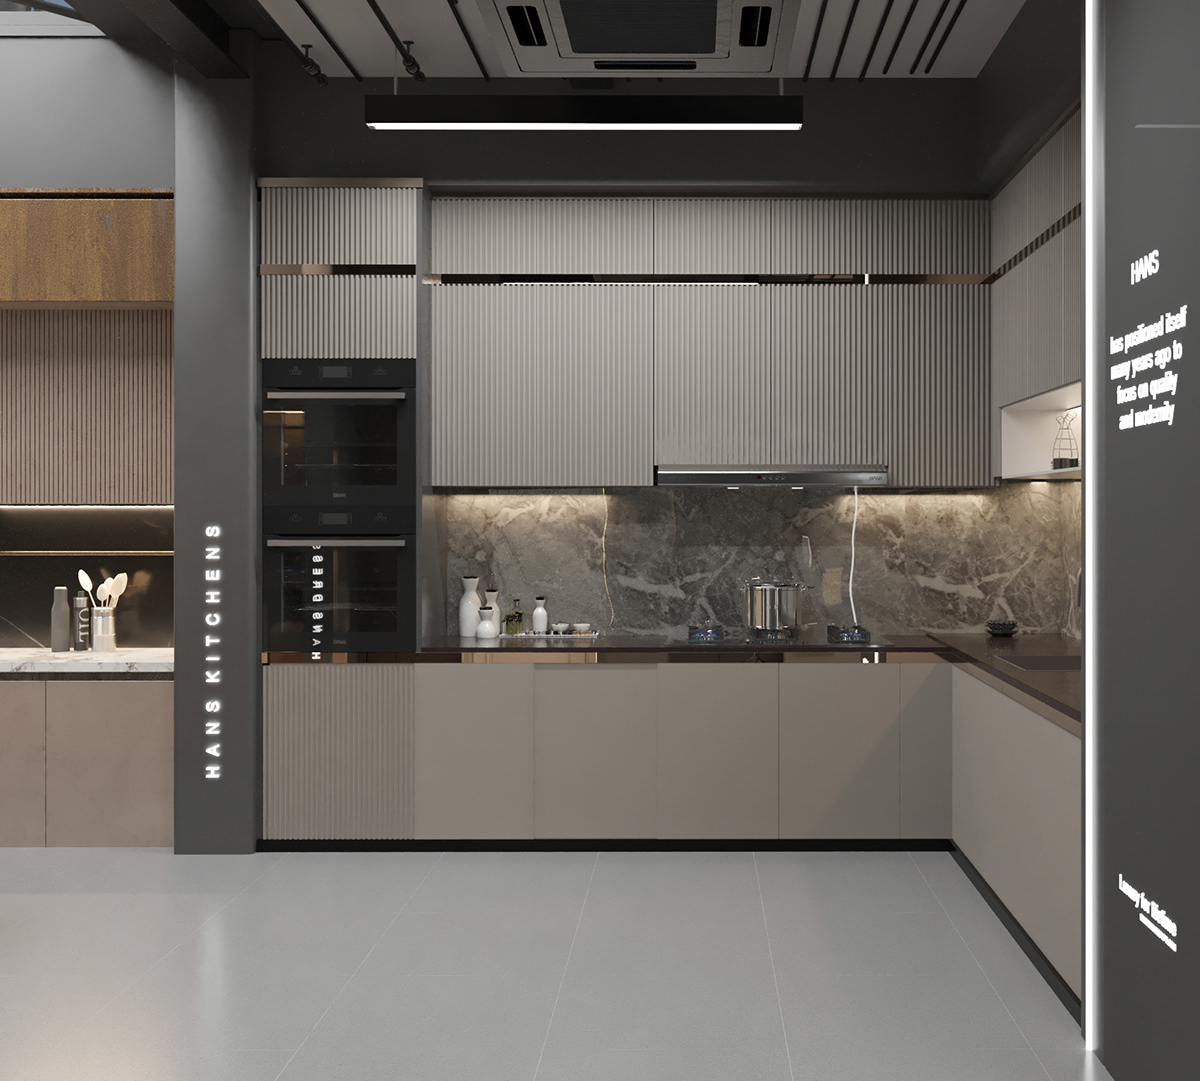 commercial design Retail store shop interior design  hans kitchen design 3ds max modern kitchenappliancesdesign